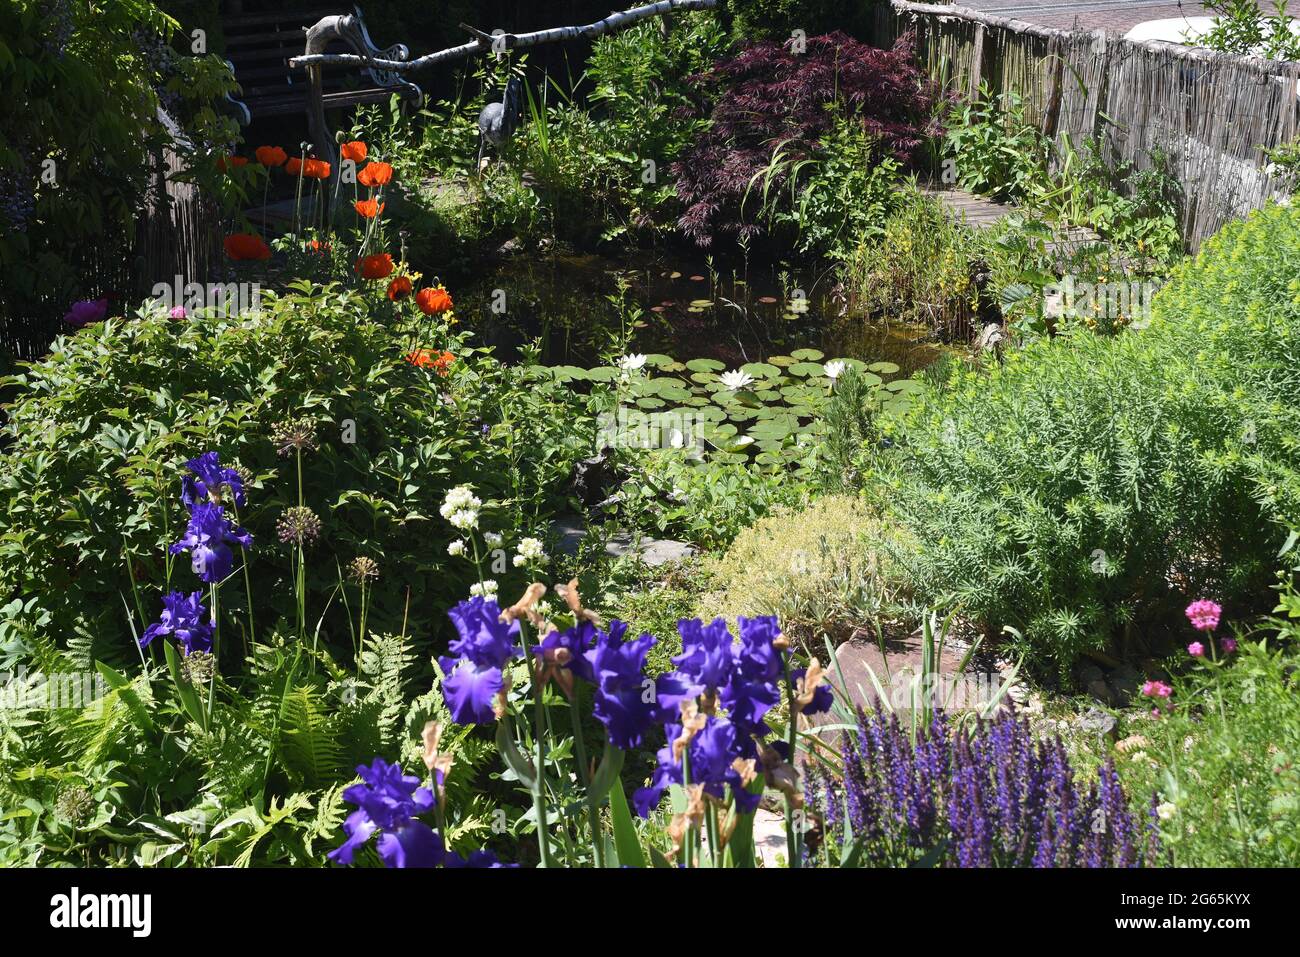 Gartenteich, mit Seerosen und anderen Wasserpflanzen und Blumen gehoert in jeden Garten der was hermacht. Garden pond, with water lilies and other wat Stock Photo